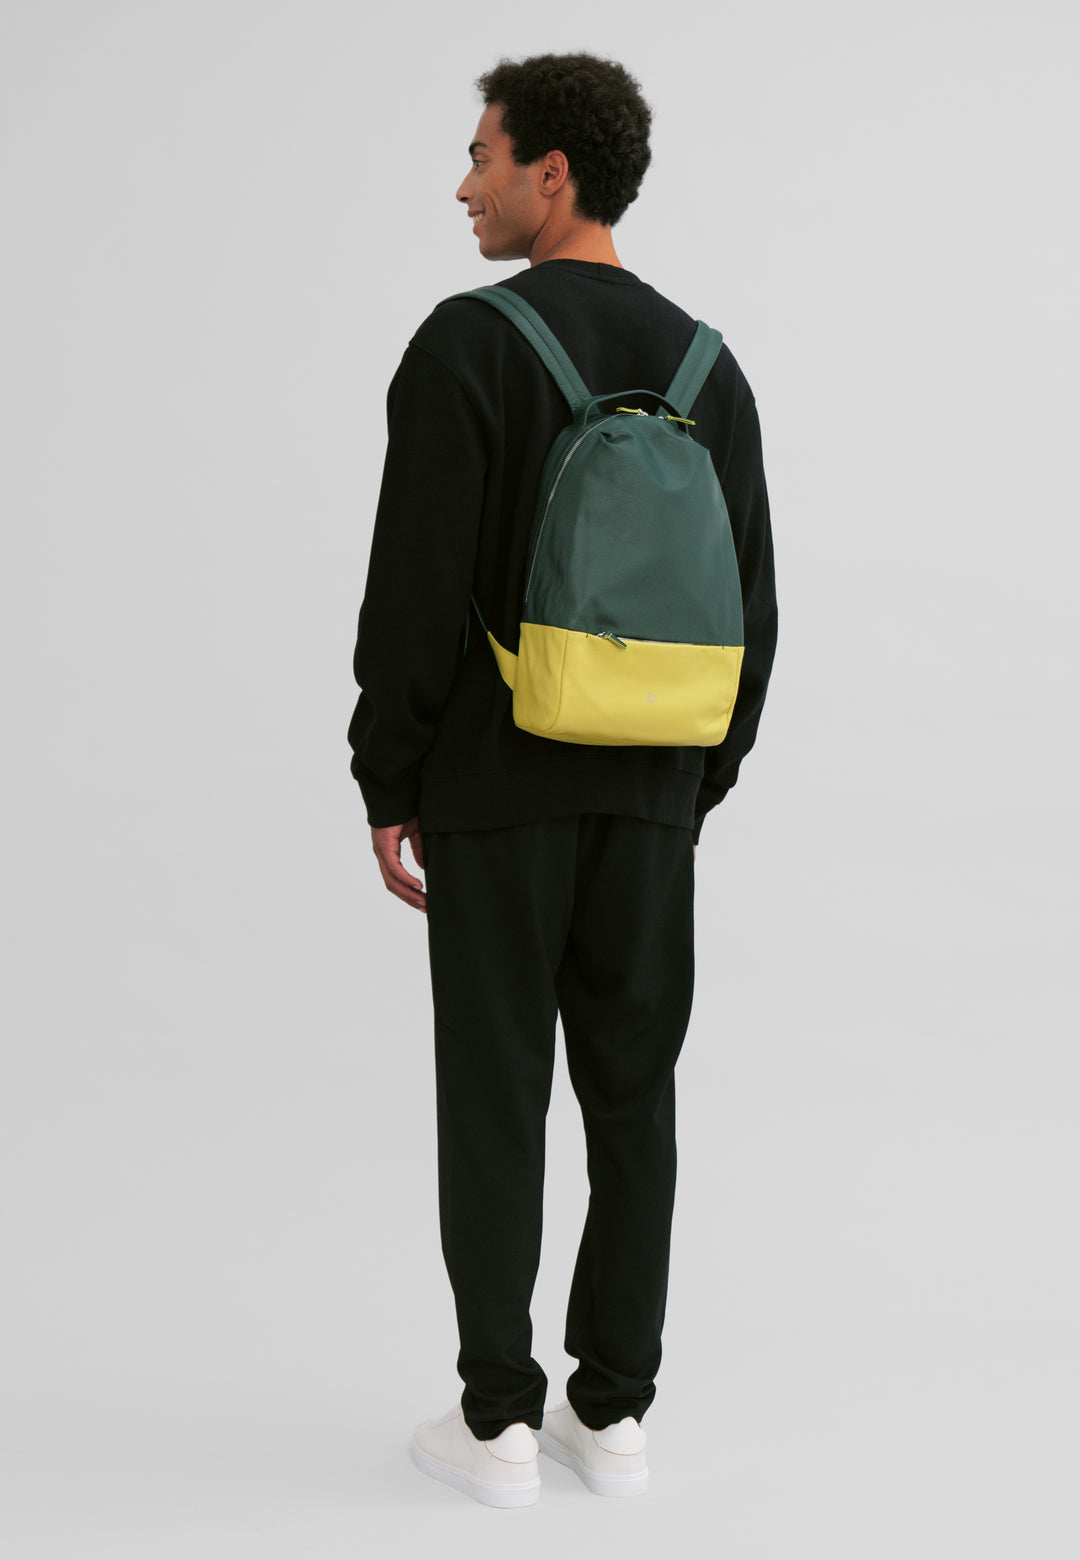 DuDu حقيبة ظهر رياضية متعددة الألوان جلدية ، حقيبة ظهر نسائية بتصميم ناعم ملون مع جيب مضاد للسرقة